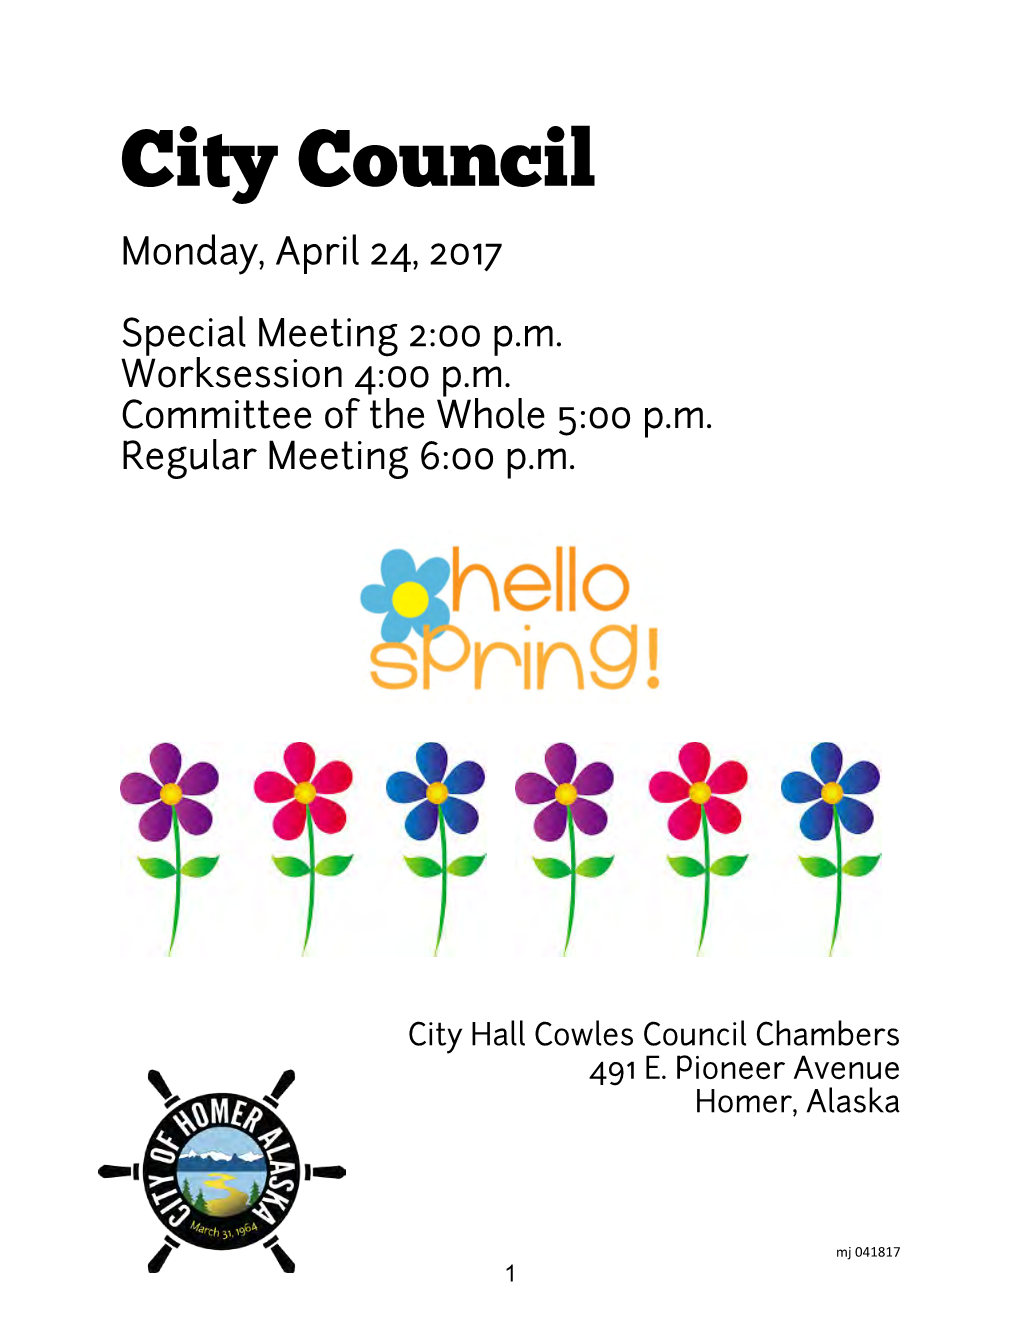 City Council Monday, April 24, 2017